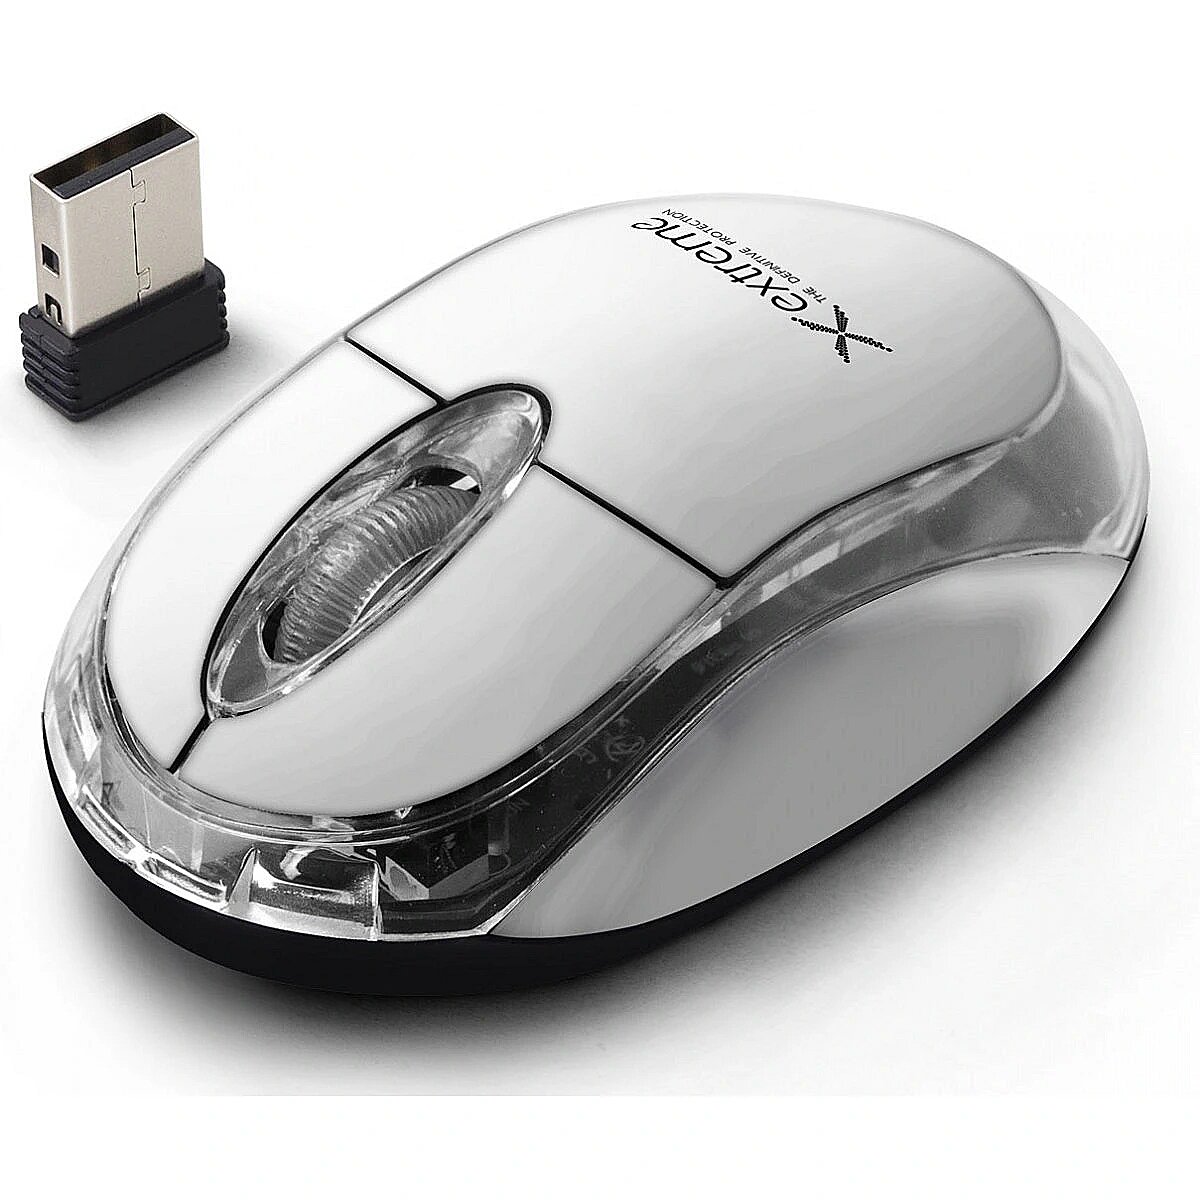 Bluetooth мышь usb. Мышь компьютерная Samsung 1000dpi Optical Mouse SPM-1015. ПК мышка 3d Optical Mouse. Мышь d-Computer mo-105 White PS/2. Мышь компьютерная проводная маленькая.